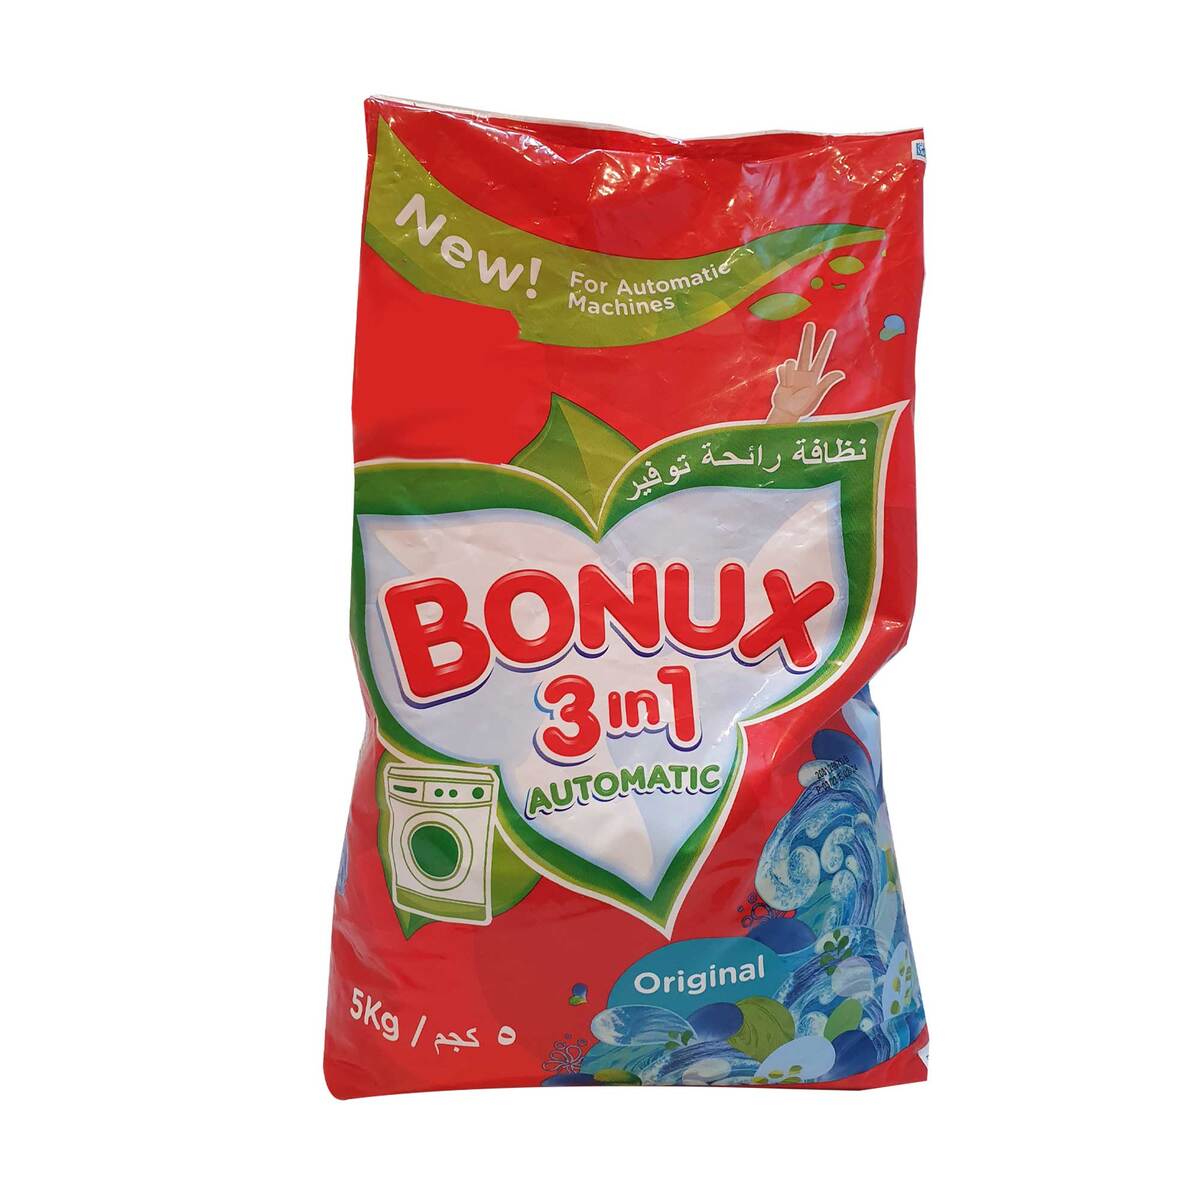 Bonux 3in1 Washing Powder Original 5kg Online at Best Price, Washing Pwdr  T.Load